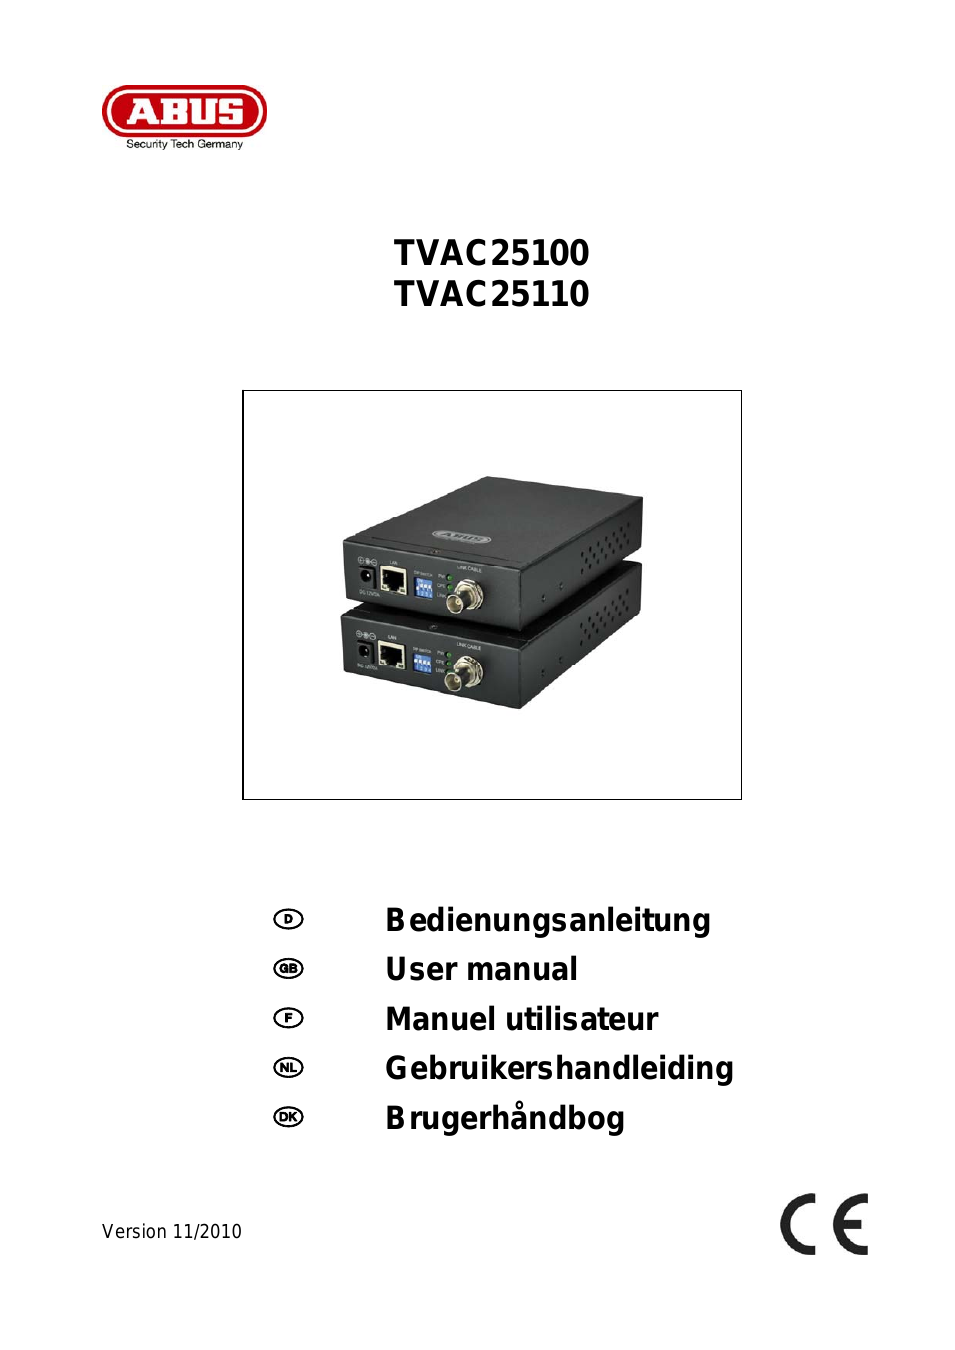 TVAC25110